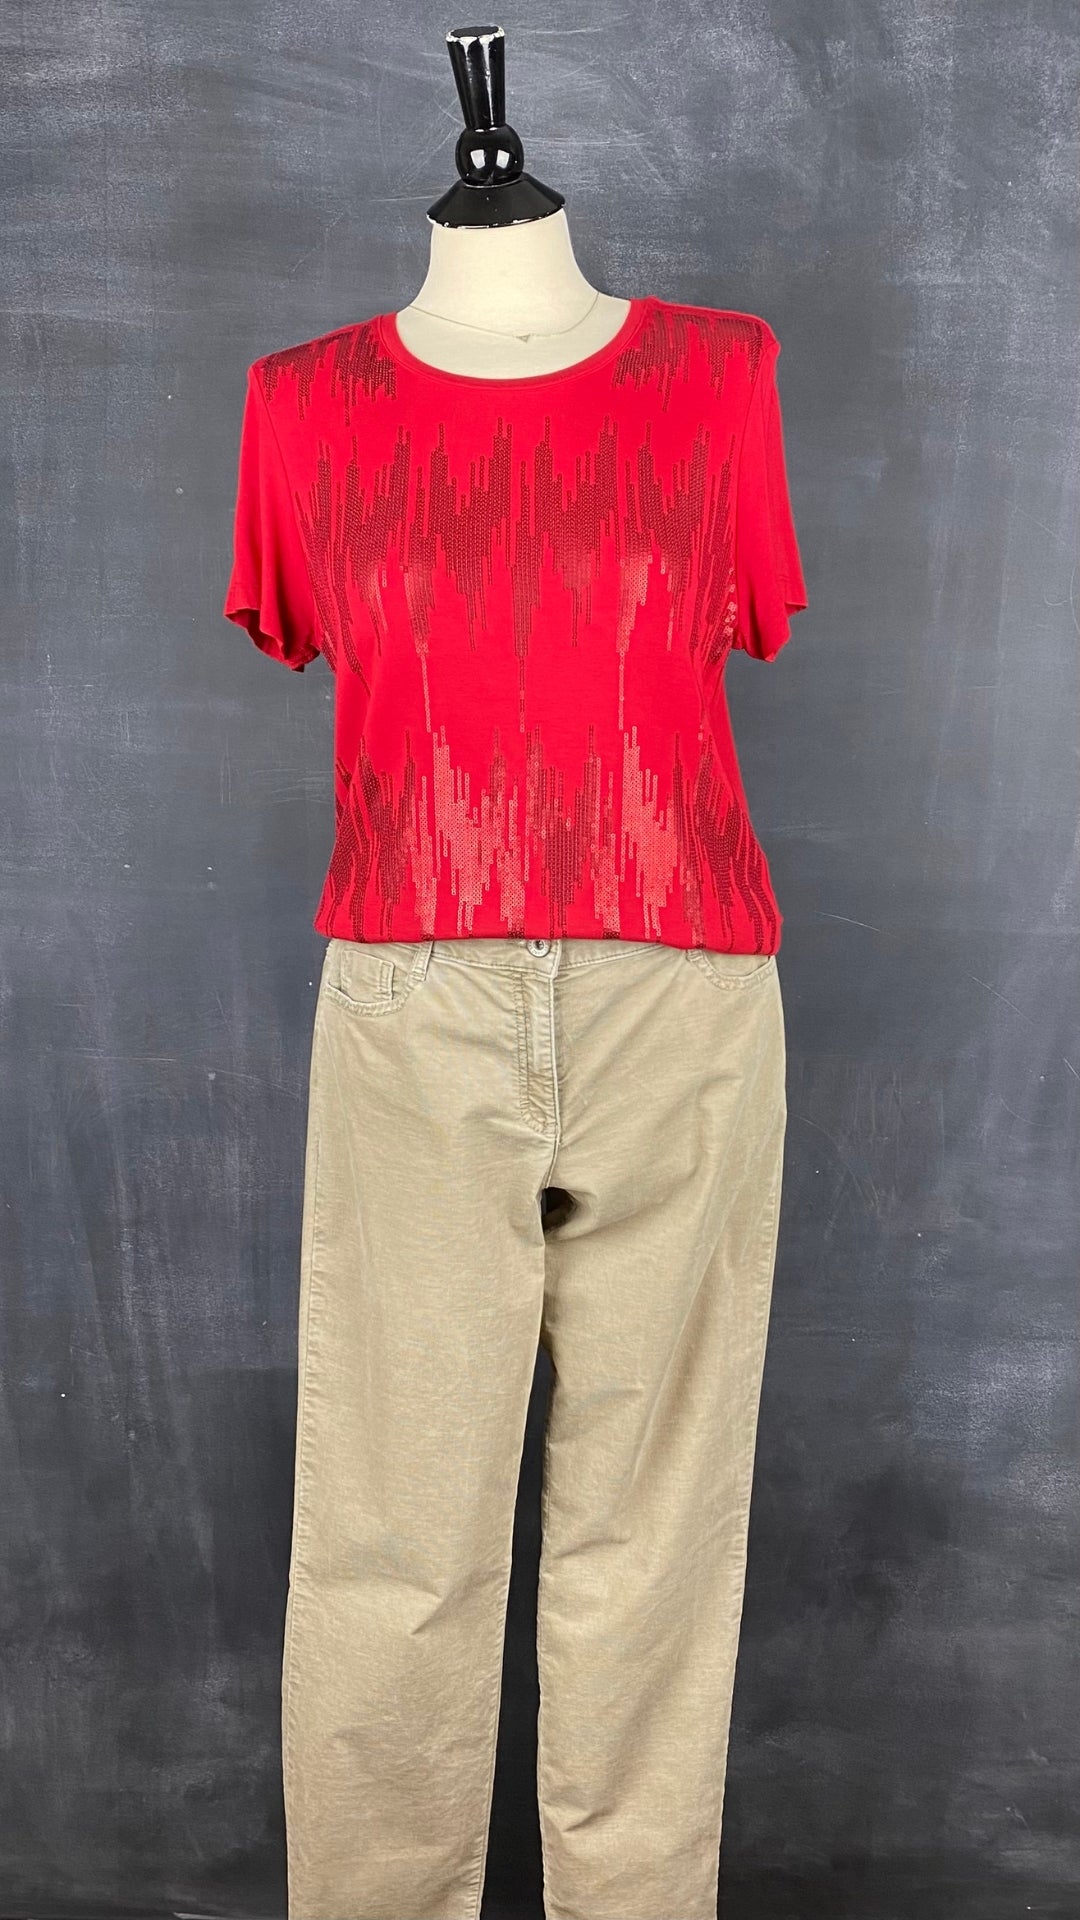 Pantalon en fin velours côtelé beige Brax, taille 31. Vue de l'agencement avec le chandail rouge à paillettes.